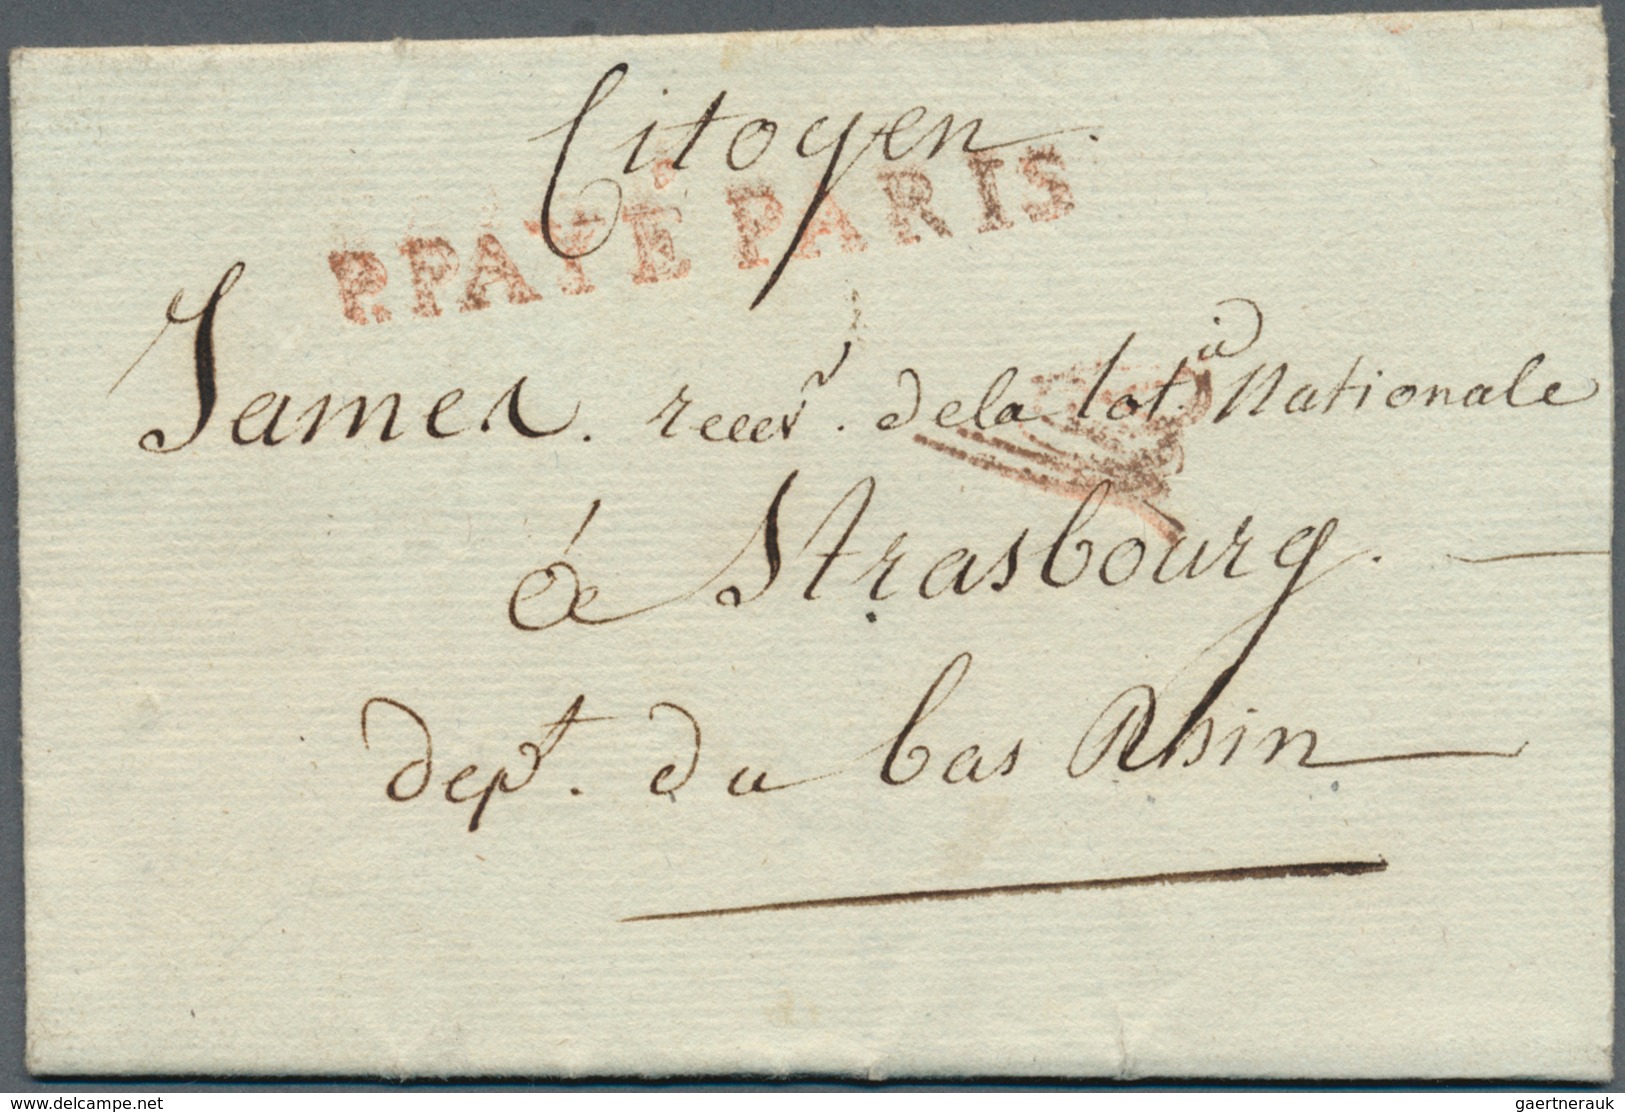 26351 Frankreich - Vorphilatelie: 1788/1866, mehr als 80 vorphilatelistische bzw. markenlose Briefe, vielf